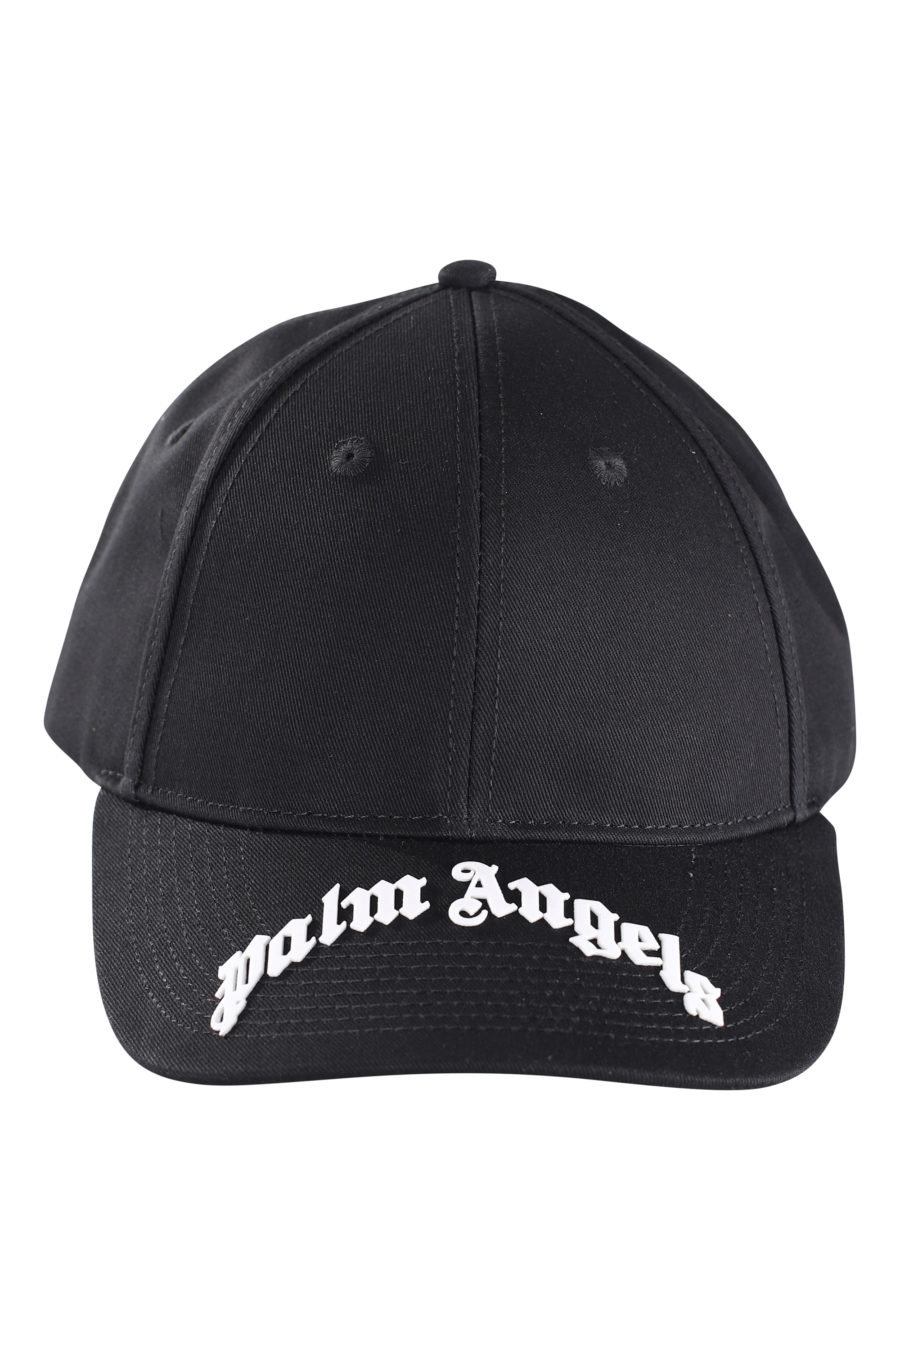 Schwarze Kappe mit geprägtem Logo auf dem Schirm - IMG 9616